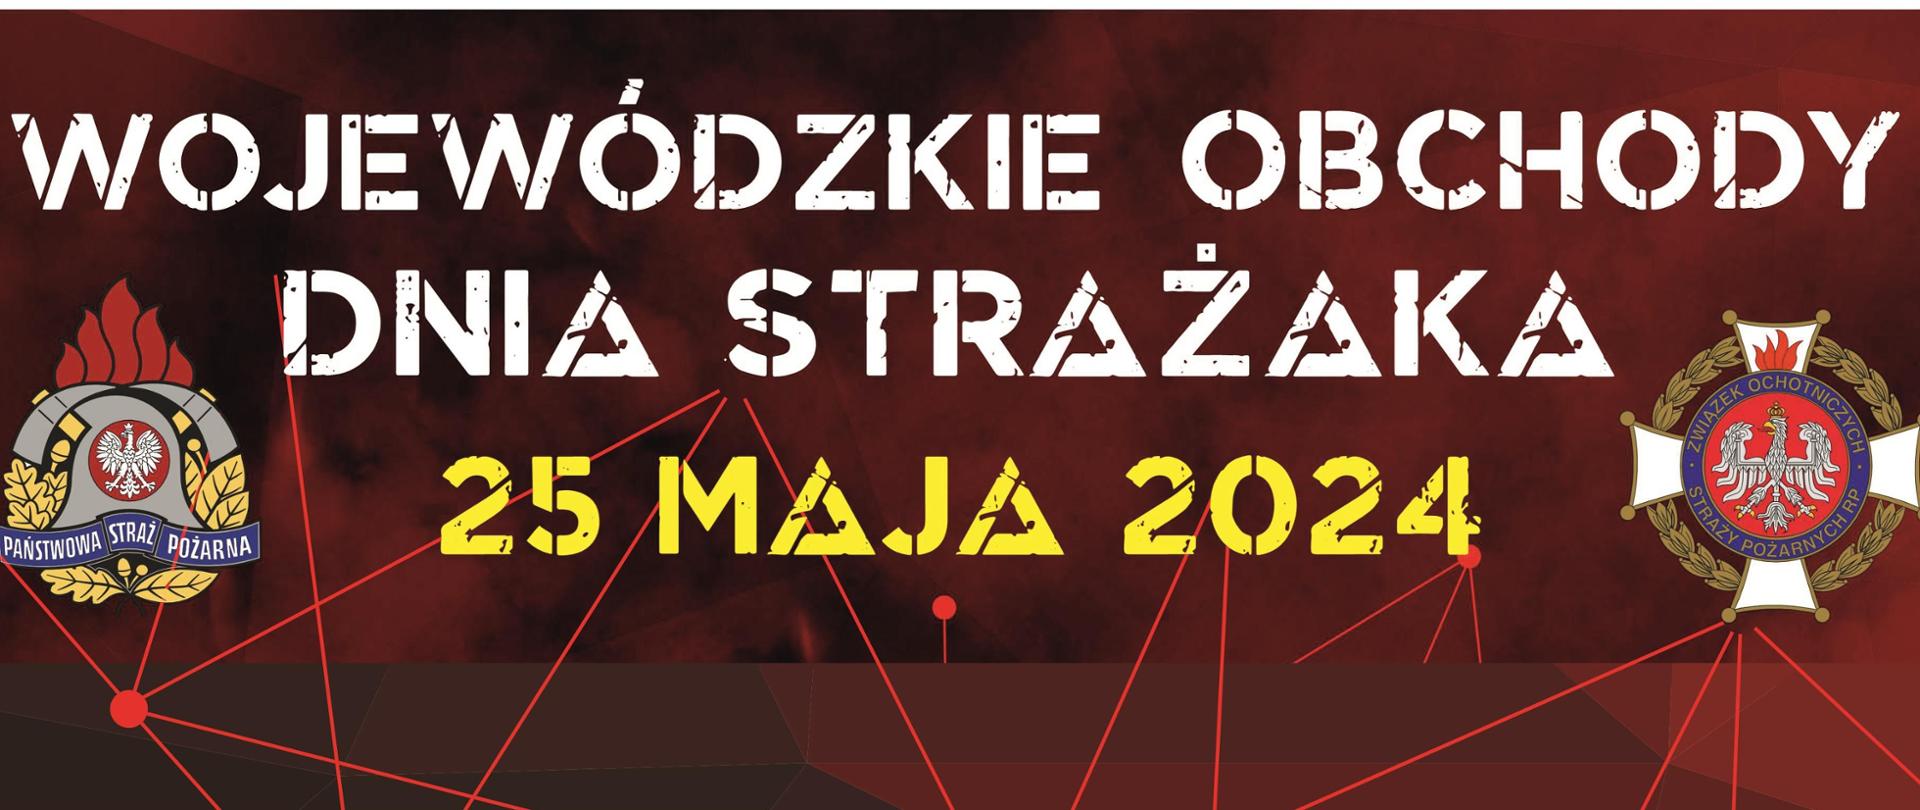 Obraz przedstawia logo Państwowej Straży Pożarnej i Związku Ochotniczych Straży Pożarnych RP oraz napis: "Wojewódzkie Obchody Dnia Strażaka 25 maja 2024".